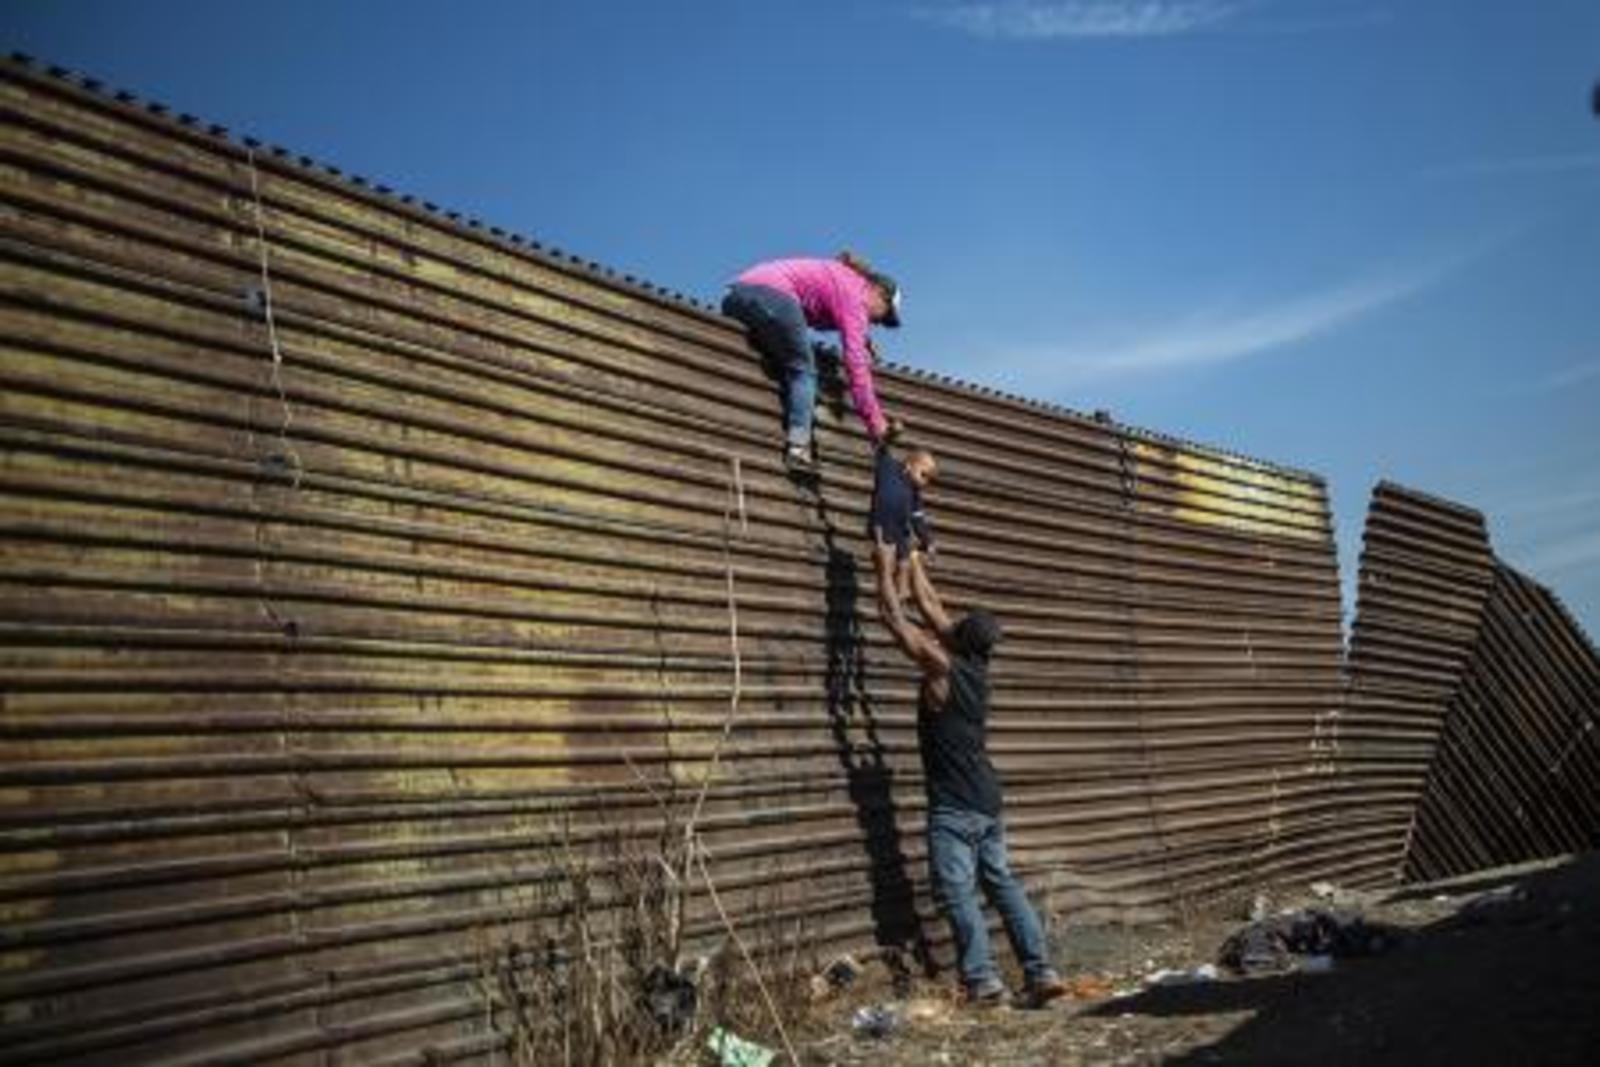 Contundente. La imagen titulada Los migrantes centroamericanos trepan la frontera entre México y Estados Unidos, fue tomada el 25 de noviembre cerca del cruce fronterizo de El Chaparral. (Twitter/@AFP)